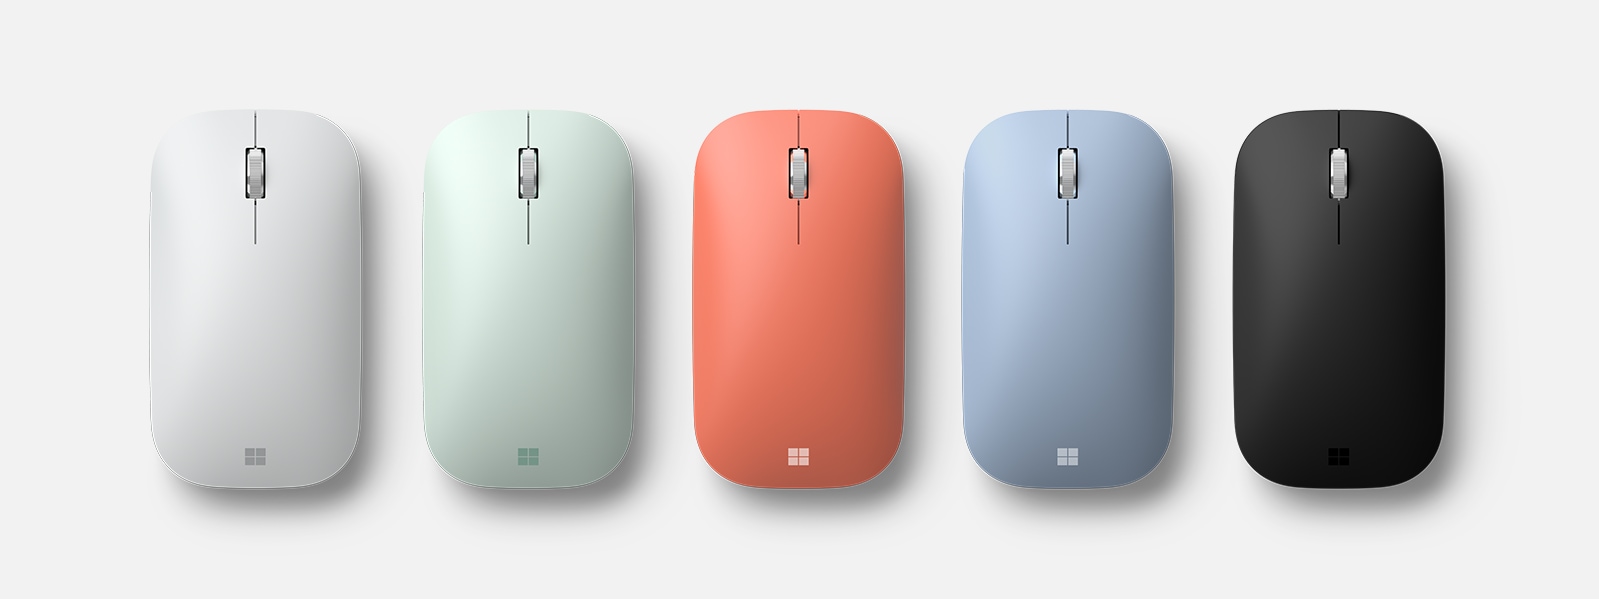 Microsoft Modern Mobile Mouse en distintos colores